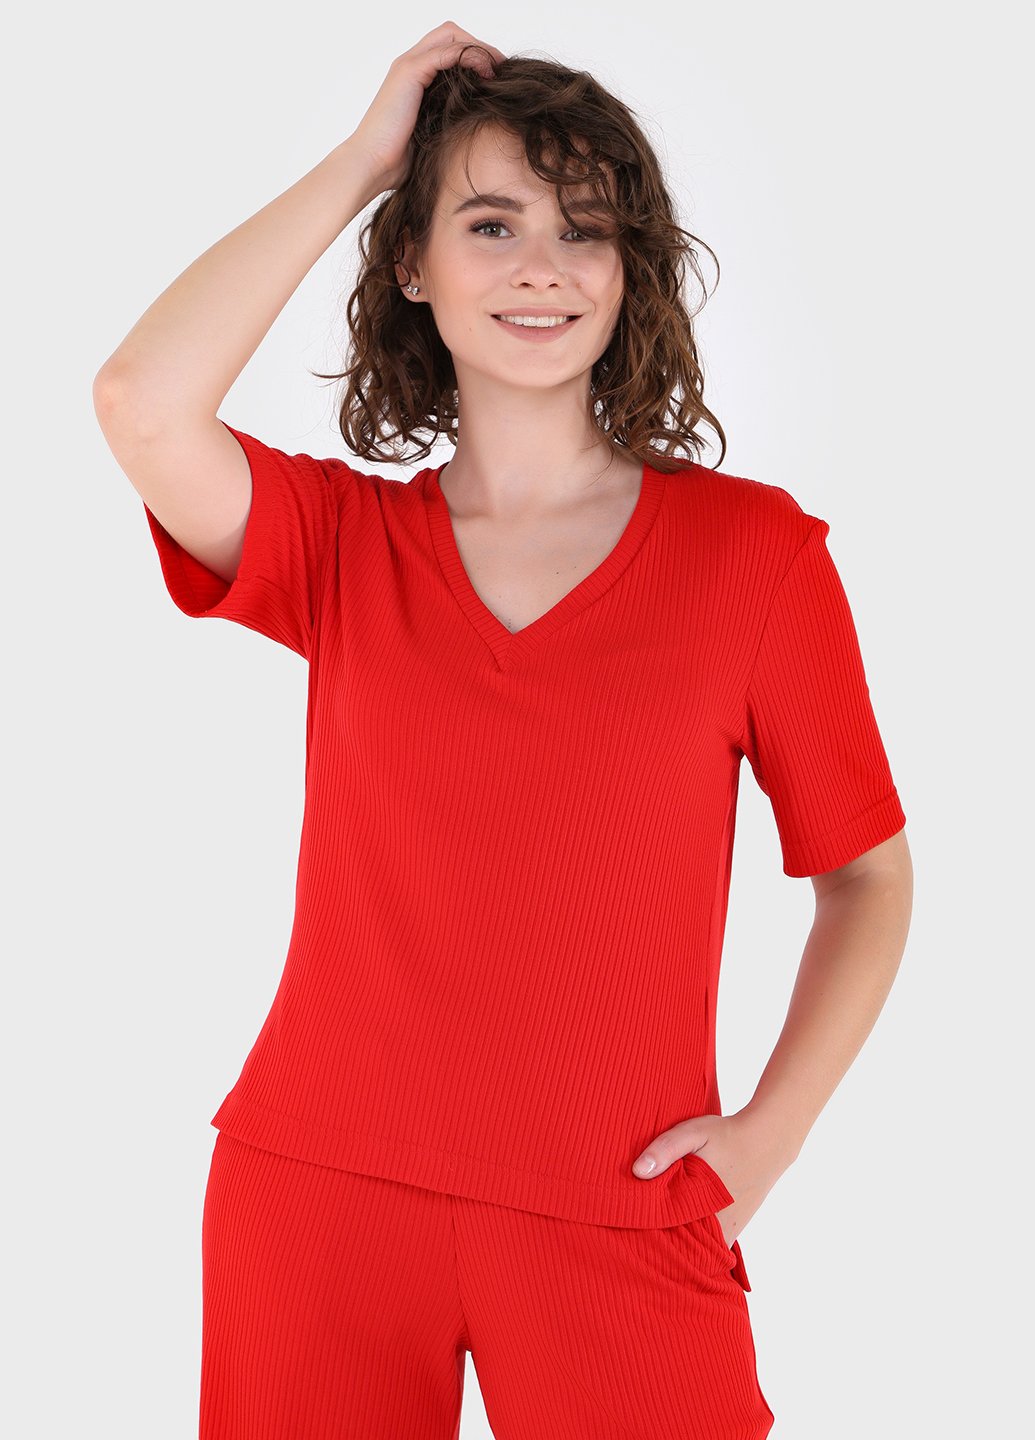 Купить Легкая футболка женская в рубчик Merlini Корунья 800000025 - Красный, 42-44 в интернет-магазине